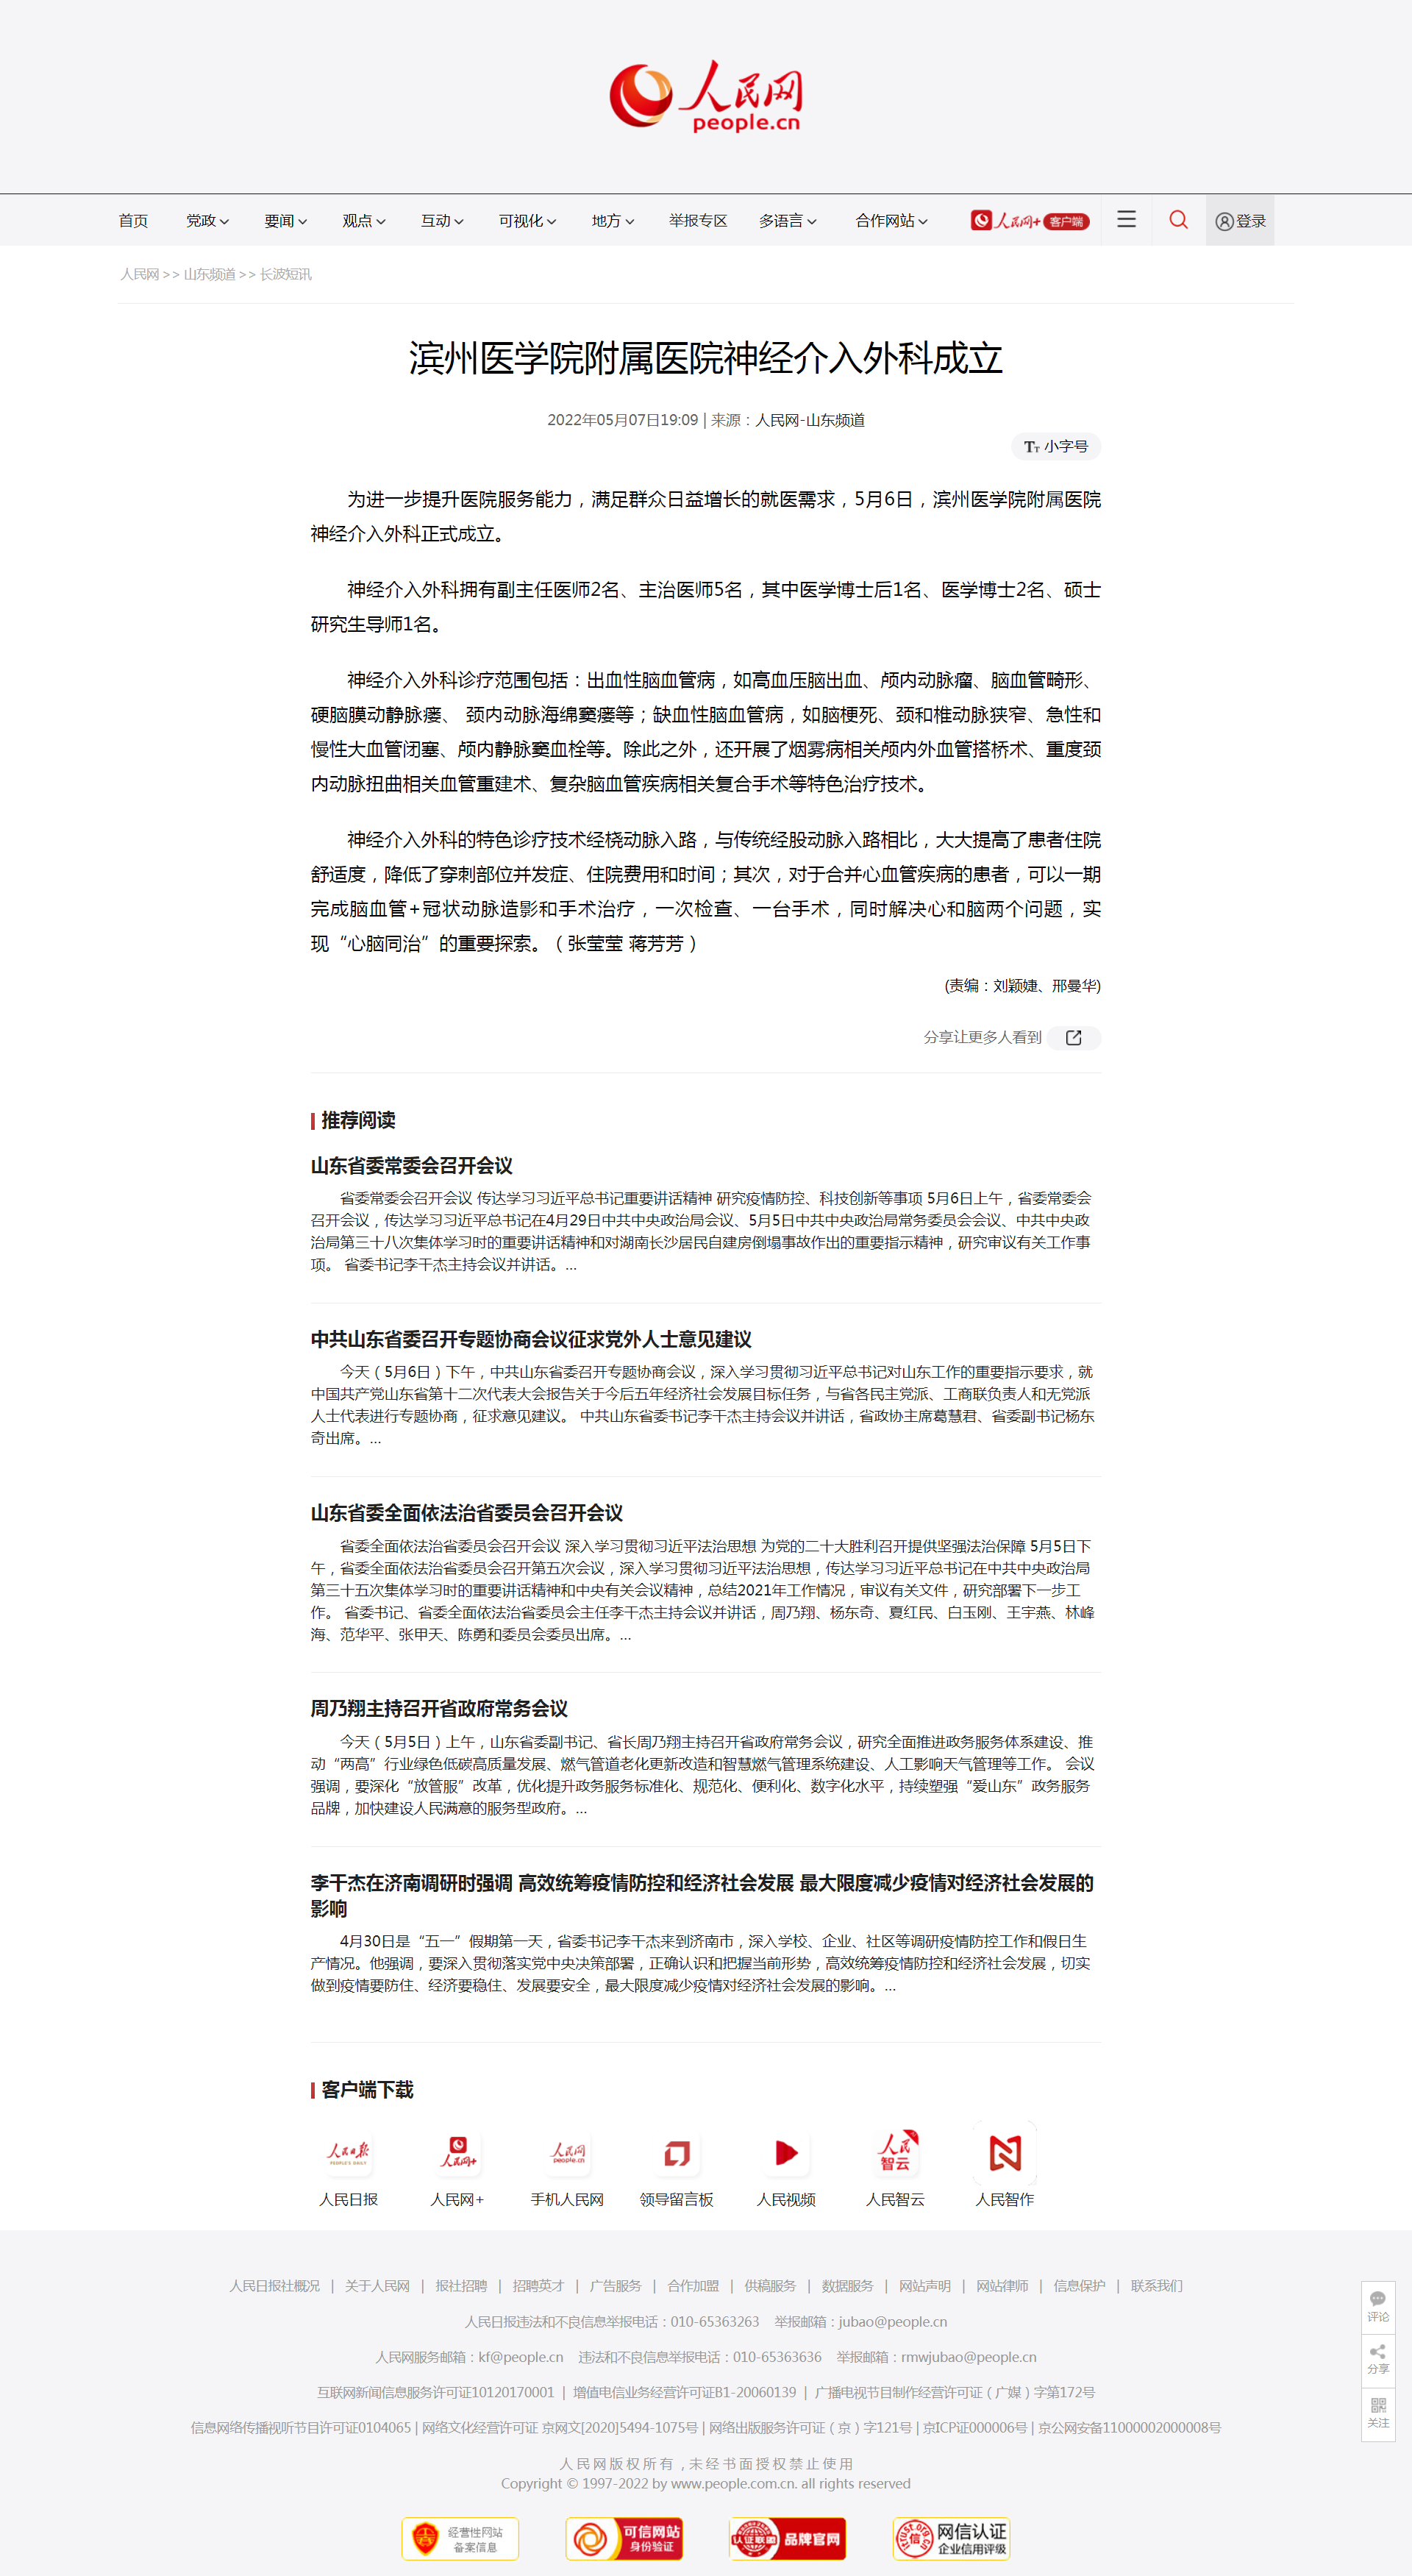 人民网 2022.05.07 滨州医学院附属医院神经介入外科成立.png